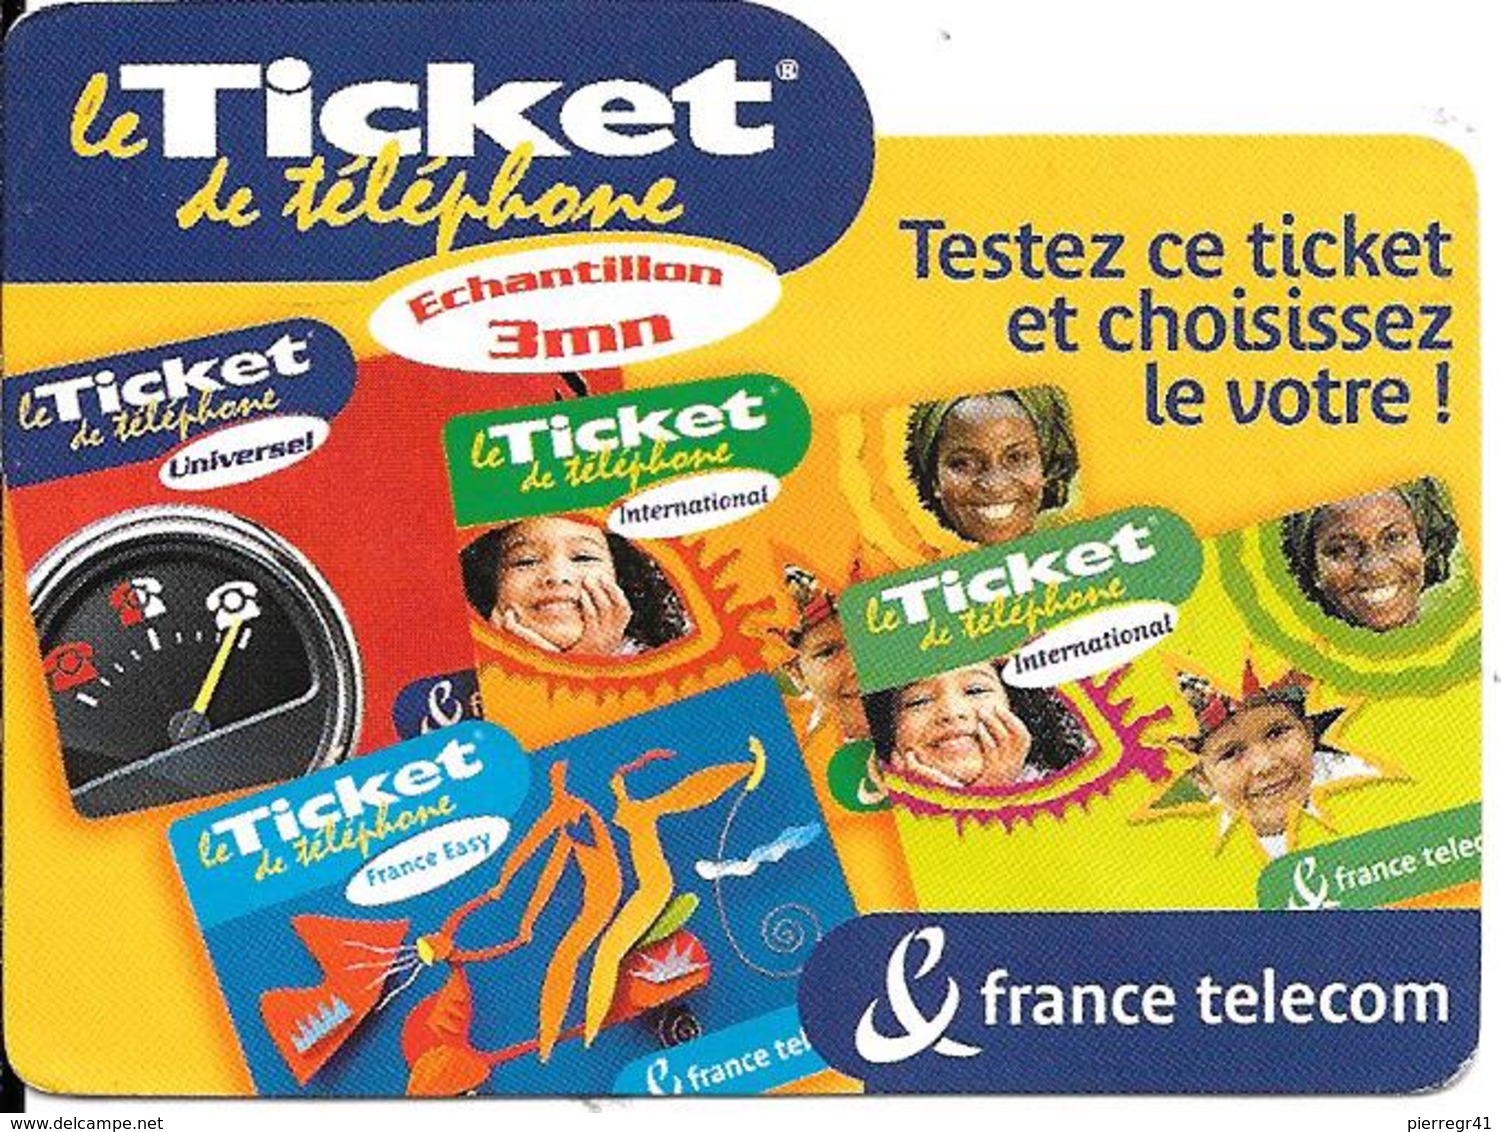 TICKET TELEPHONE-FRANCE-ECHANTILLON 3Mn-Exp 31/01/2002 Gratté-TBE - FT Tickets